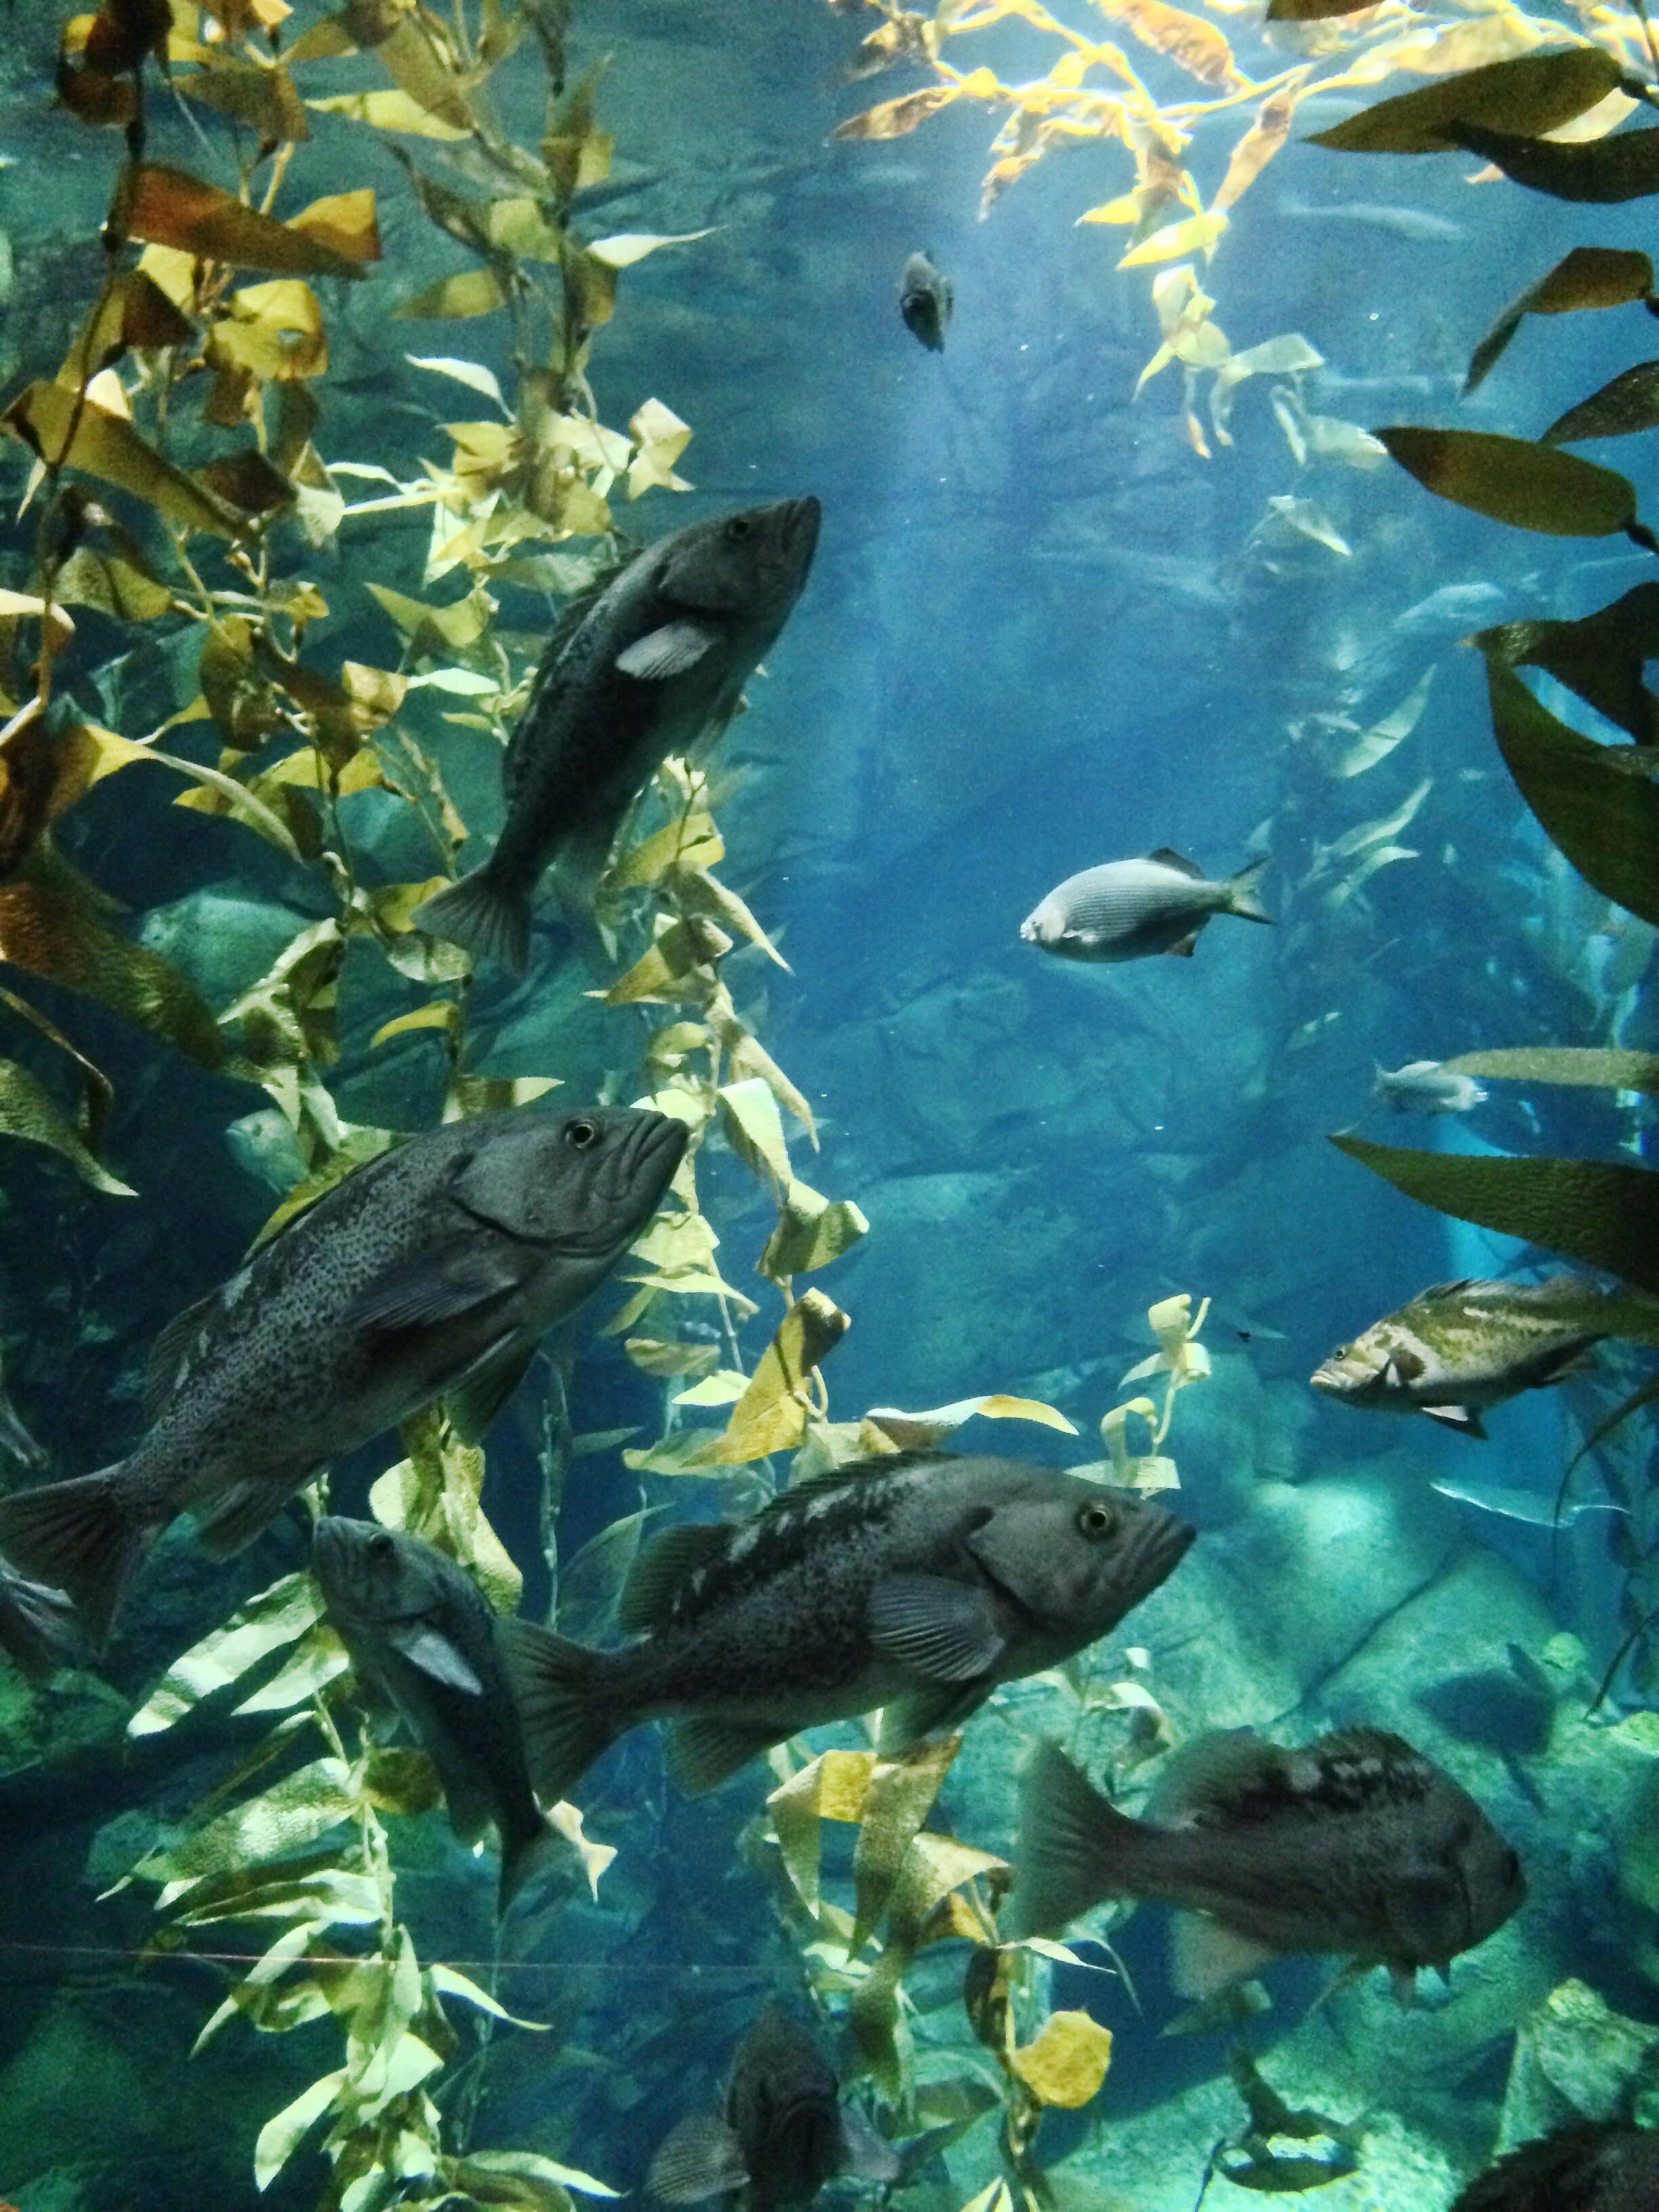 Ripley's Aquarium - Toronto, Ontario, Canada